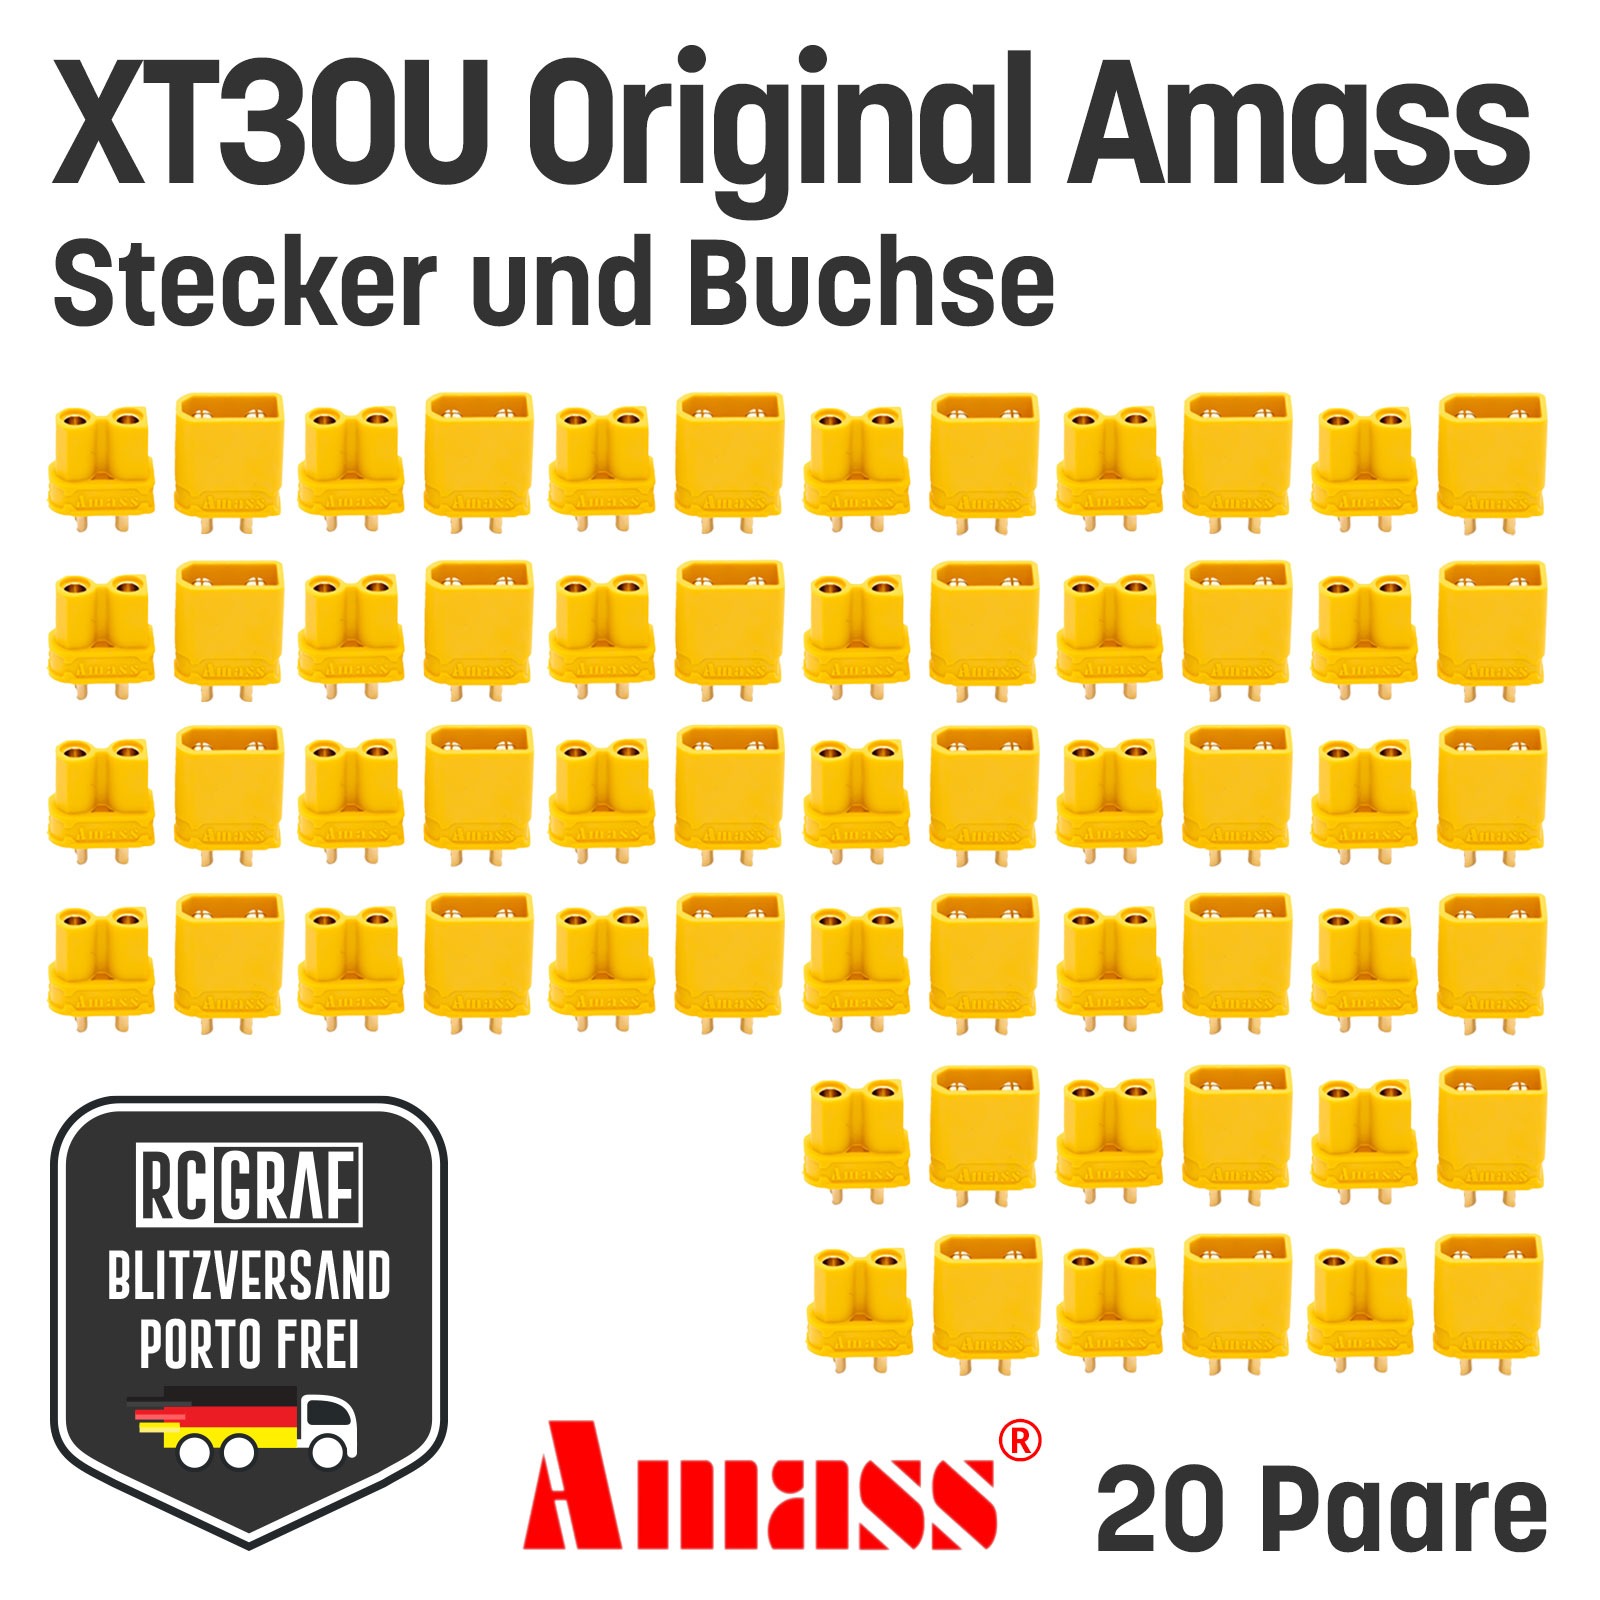 20 Paare XT30U Original Amass